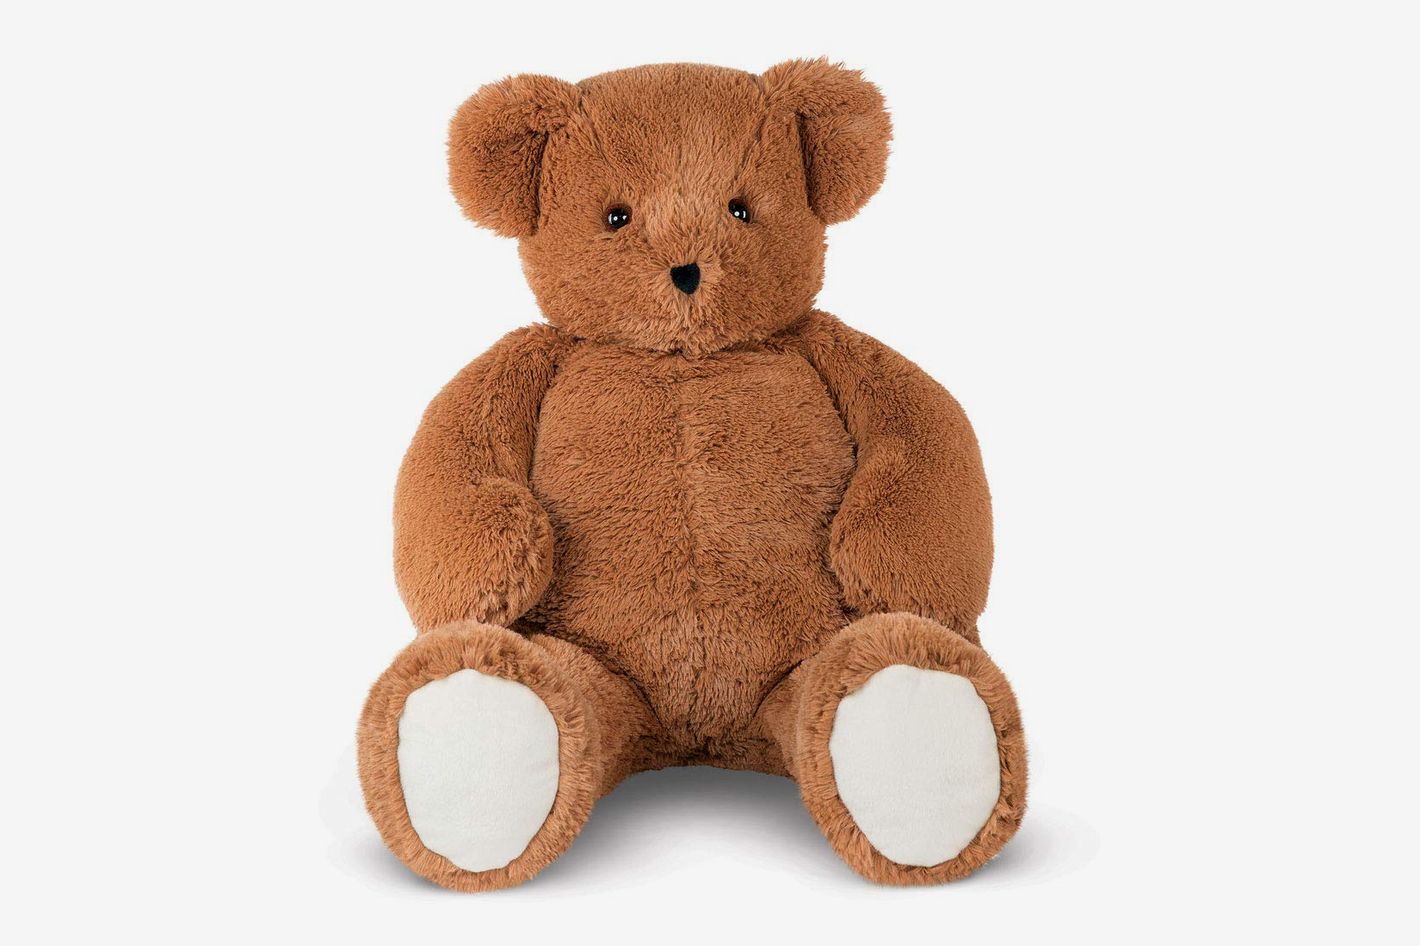 BIG Jumbo 16" Soft Teddy Bear holding Testa regali di compleanno anniversario San Valentino 